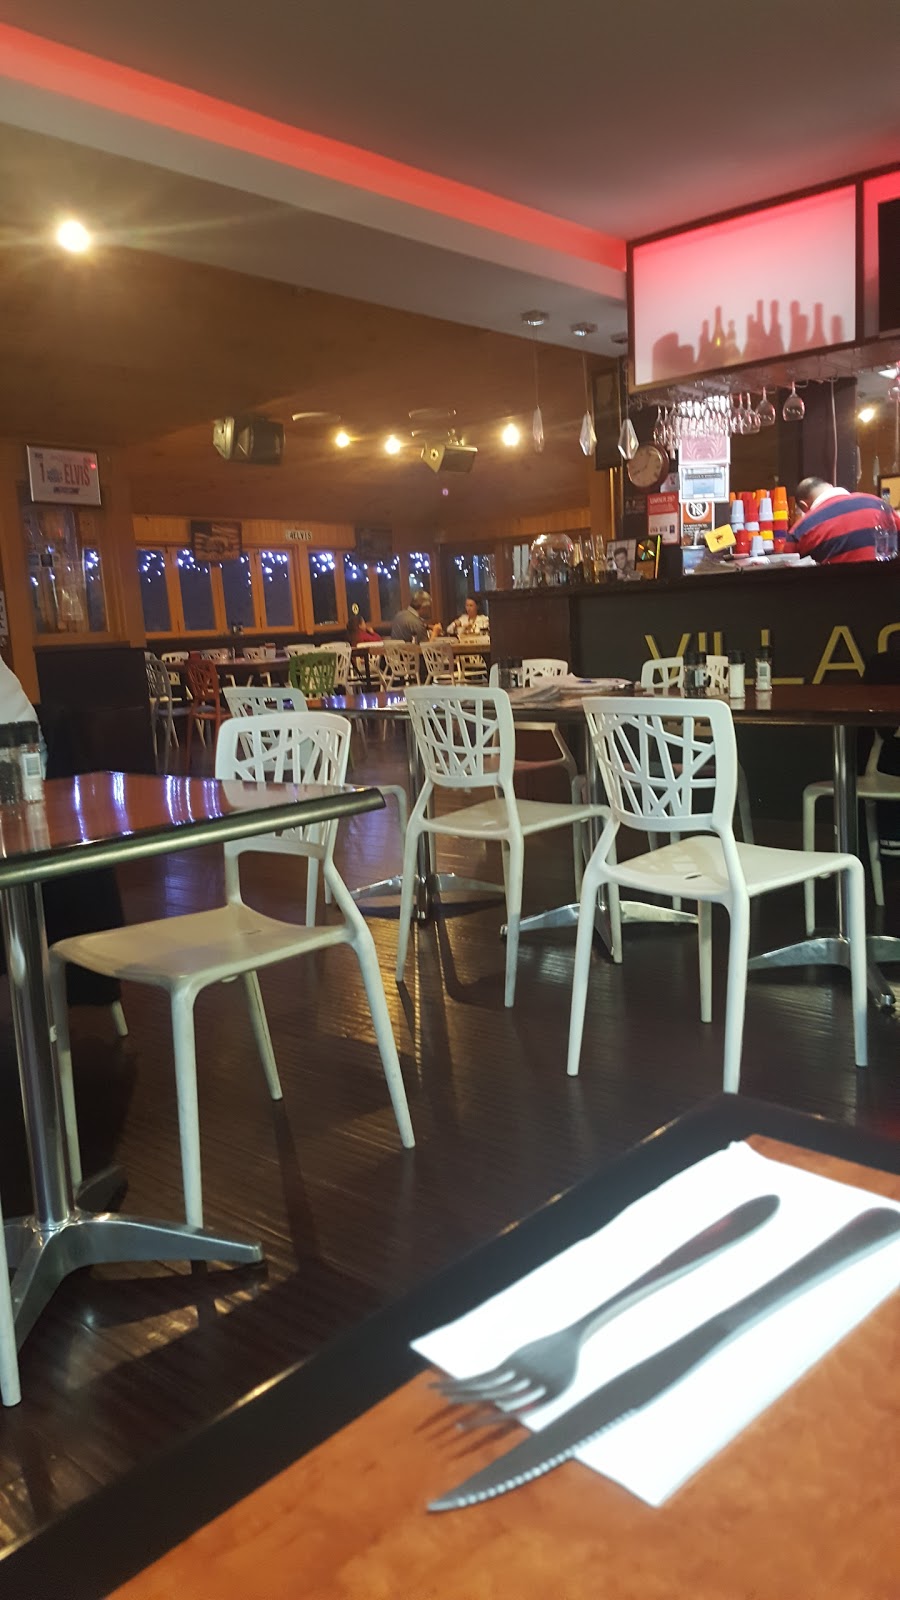 Villaggio Bar Cafe | cafe | 11/25-35 Selems Parade, Revesby NSW 2212, Australia | 0297923928 OR +61 2 9792 3928